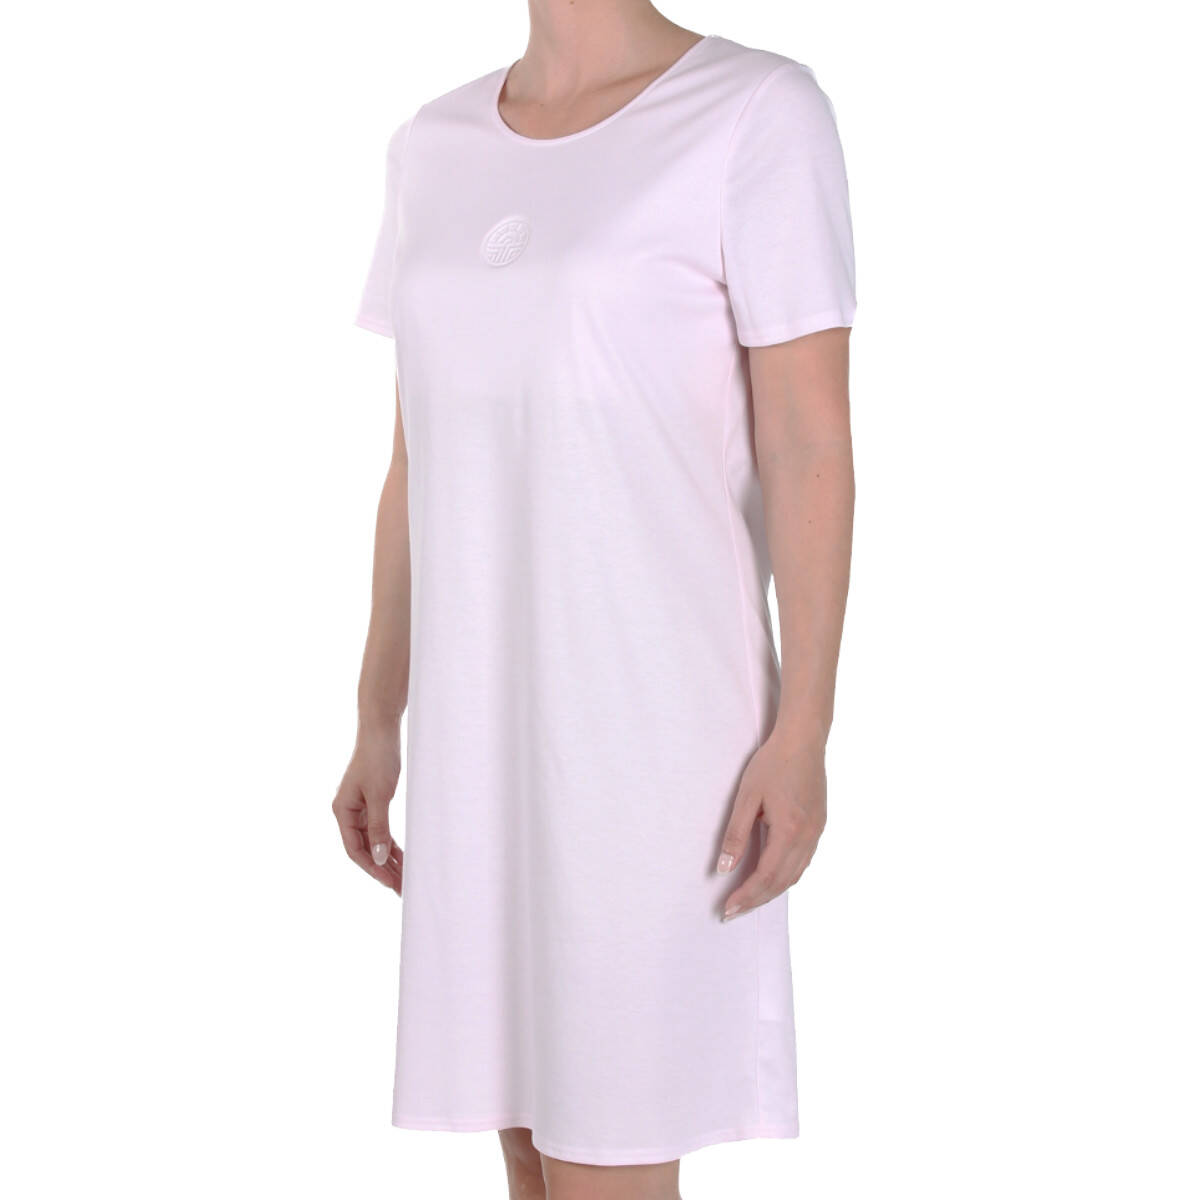 Feraud - Damen Nachthemd - 90 cm lang - Kurzarm, 69,95 €